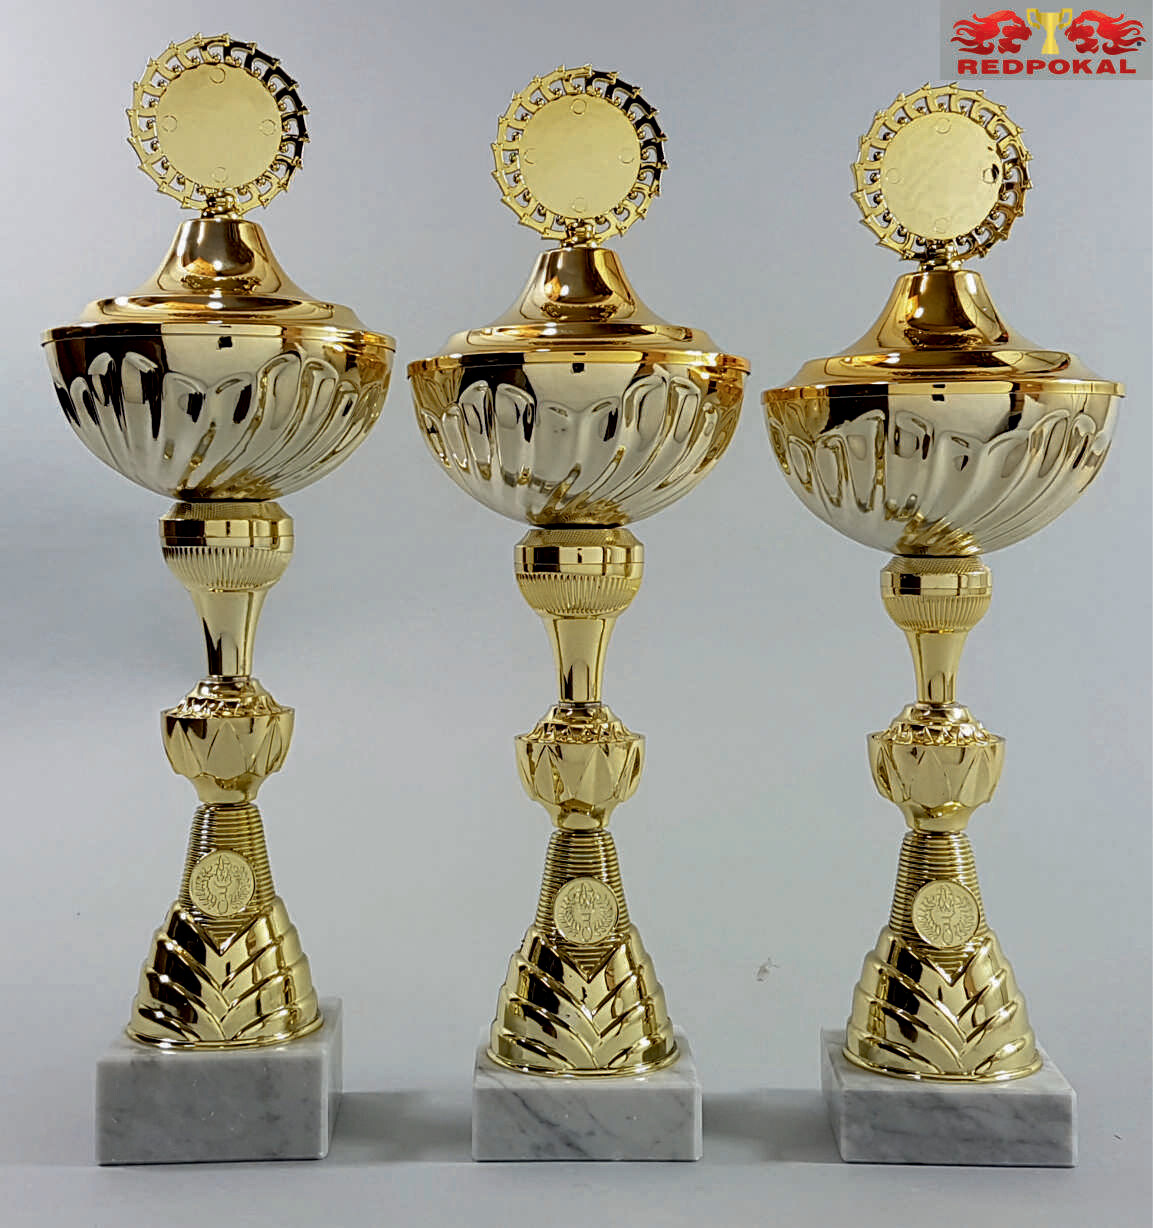 3er Pokalserie gold, 43 - 45 cm E566/1-3